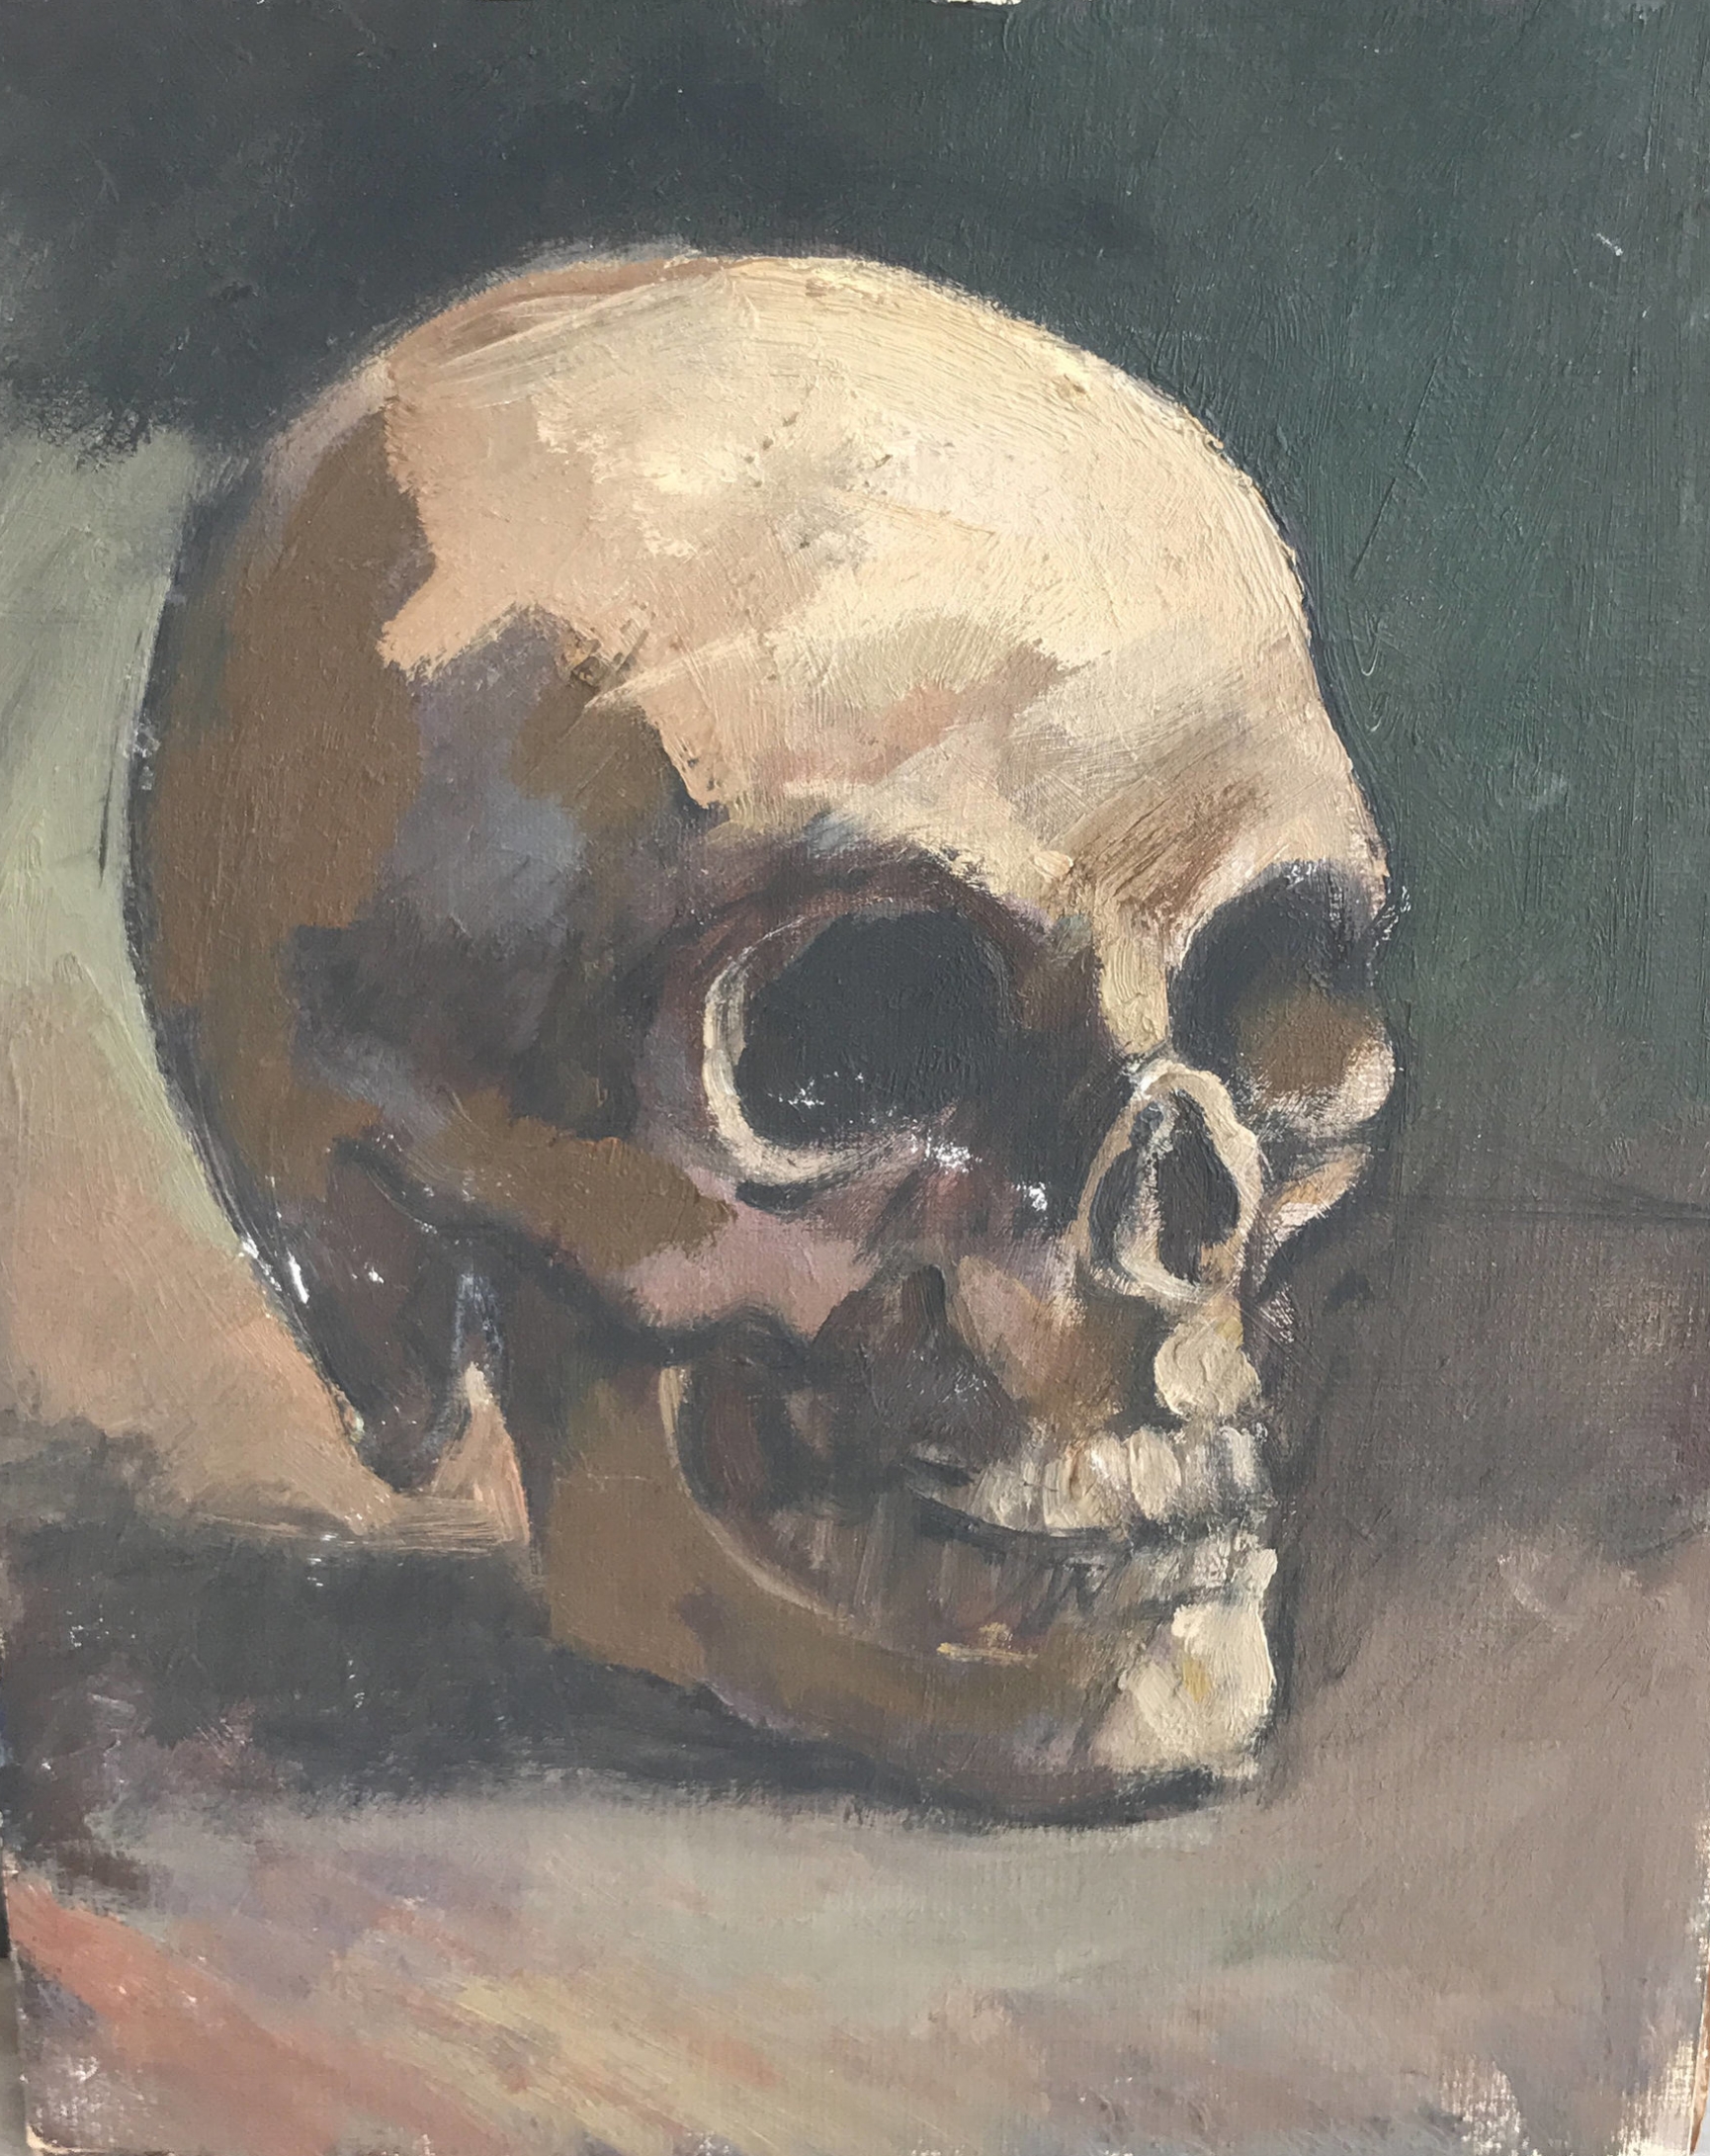 Vintage still life oil painting on board of a skull